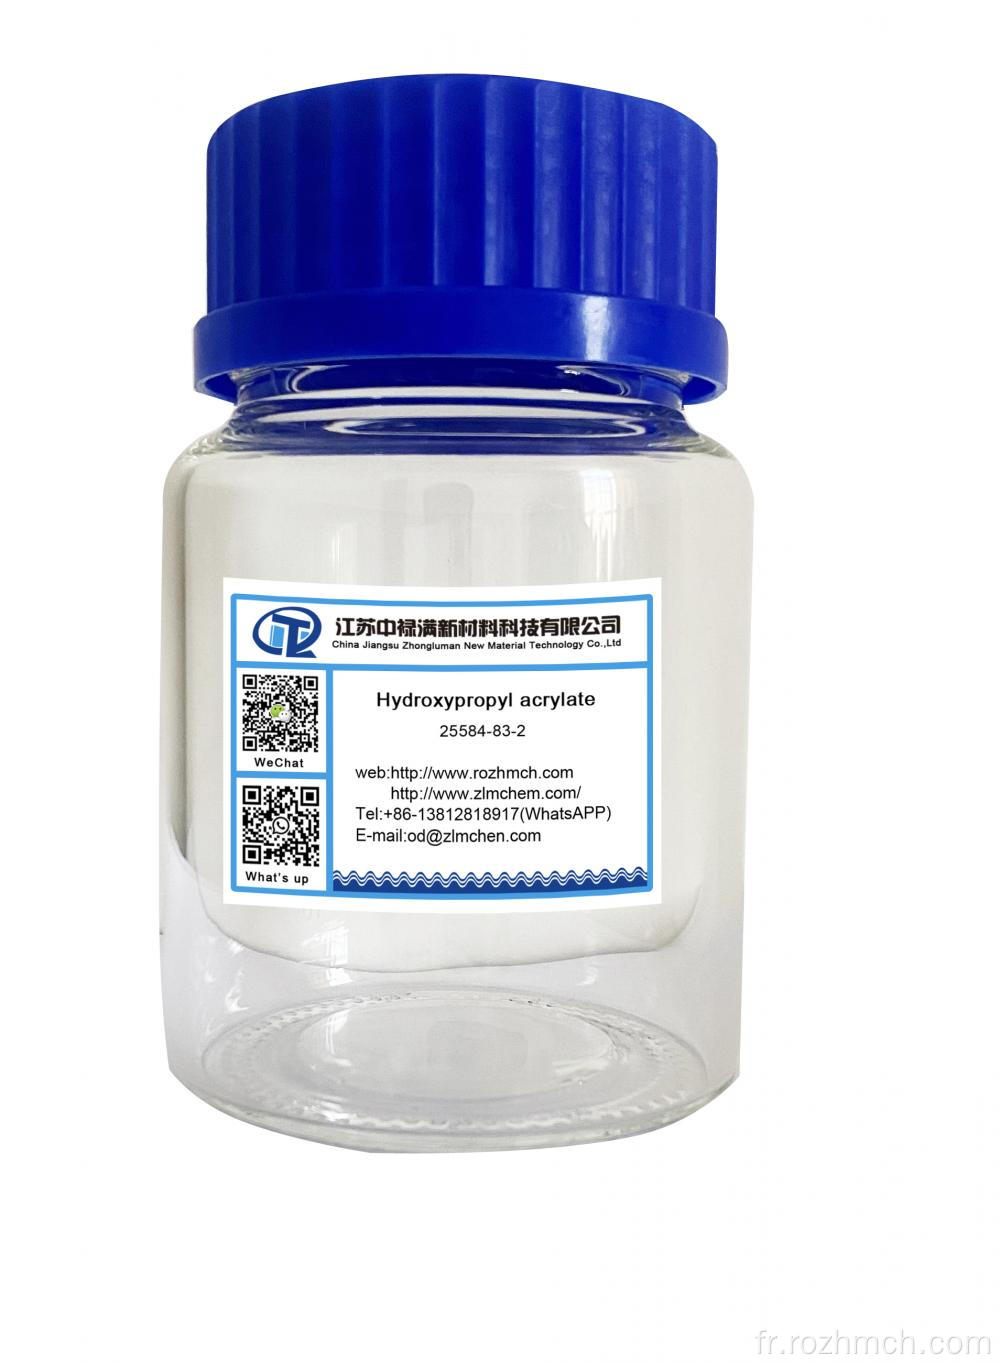 Hydroxypropyl Acrylate CAS 25584-83-2